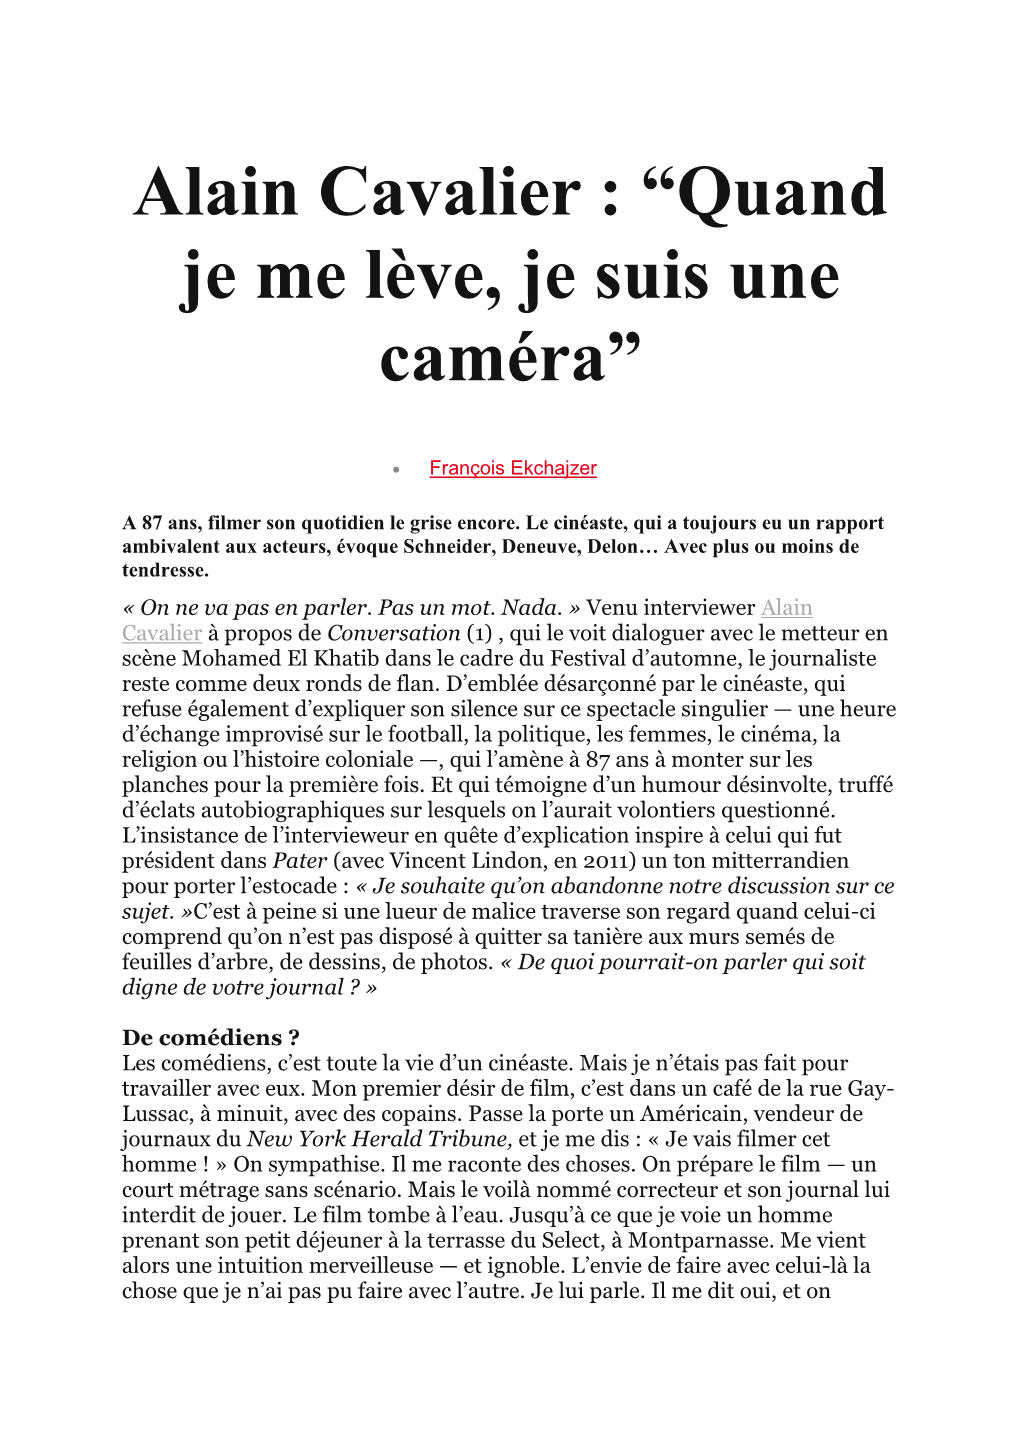 Alain Cavalier : “Quand Je Me Lève, Je Suis Une Caméra”